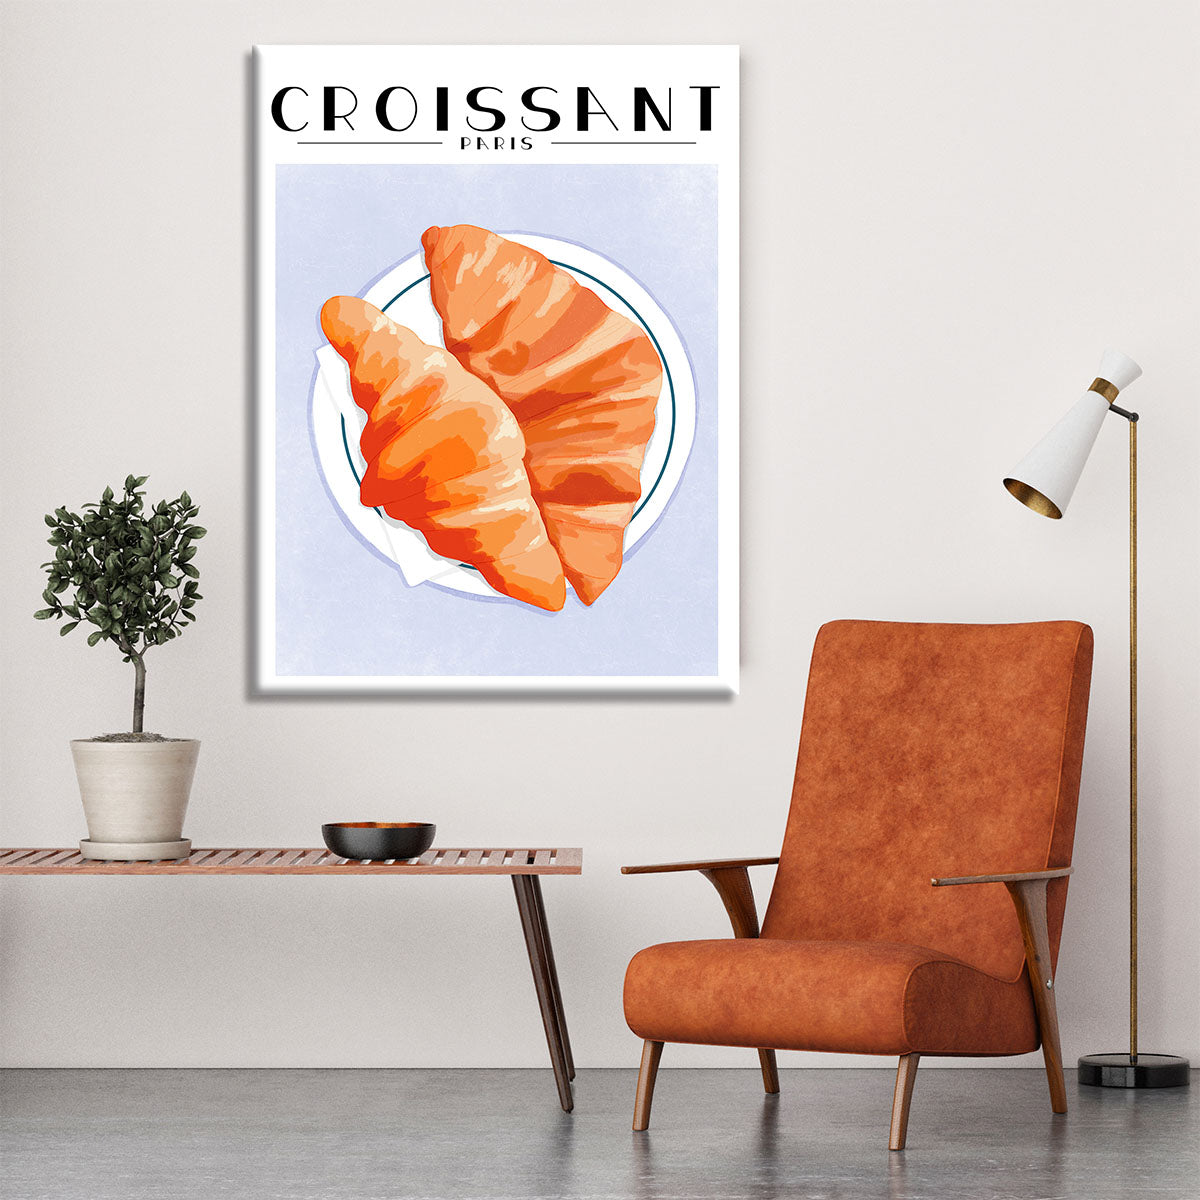 Croissant Paris Canvas Print or Poster - Canvas Art Rocks - 6